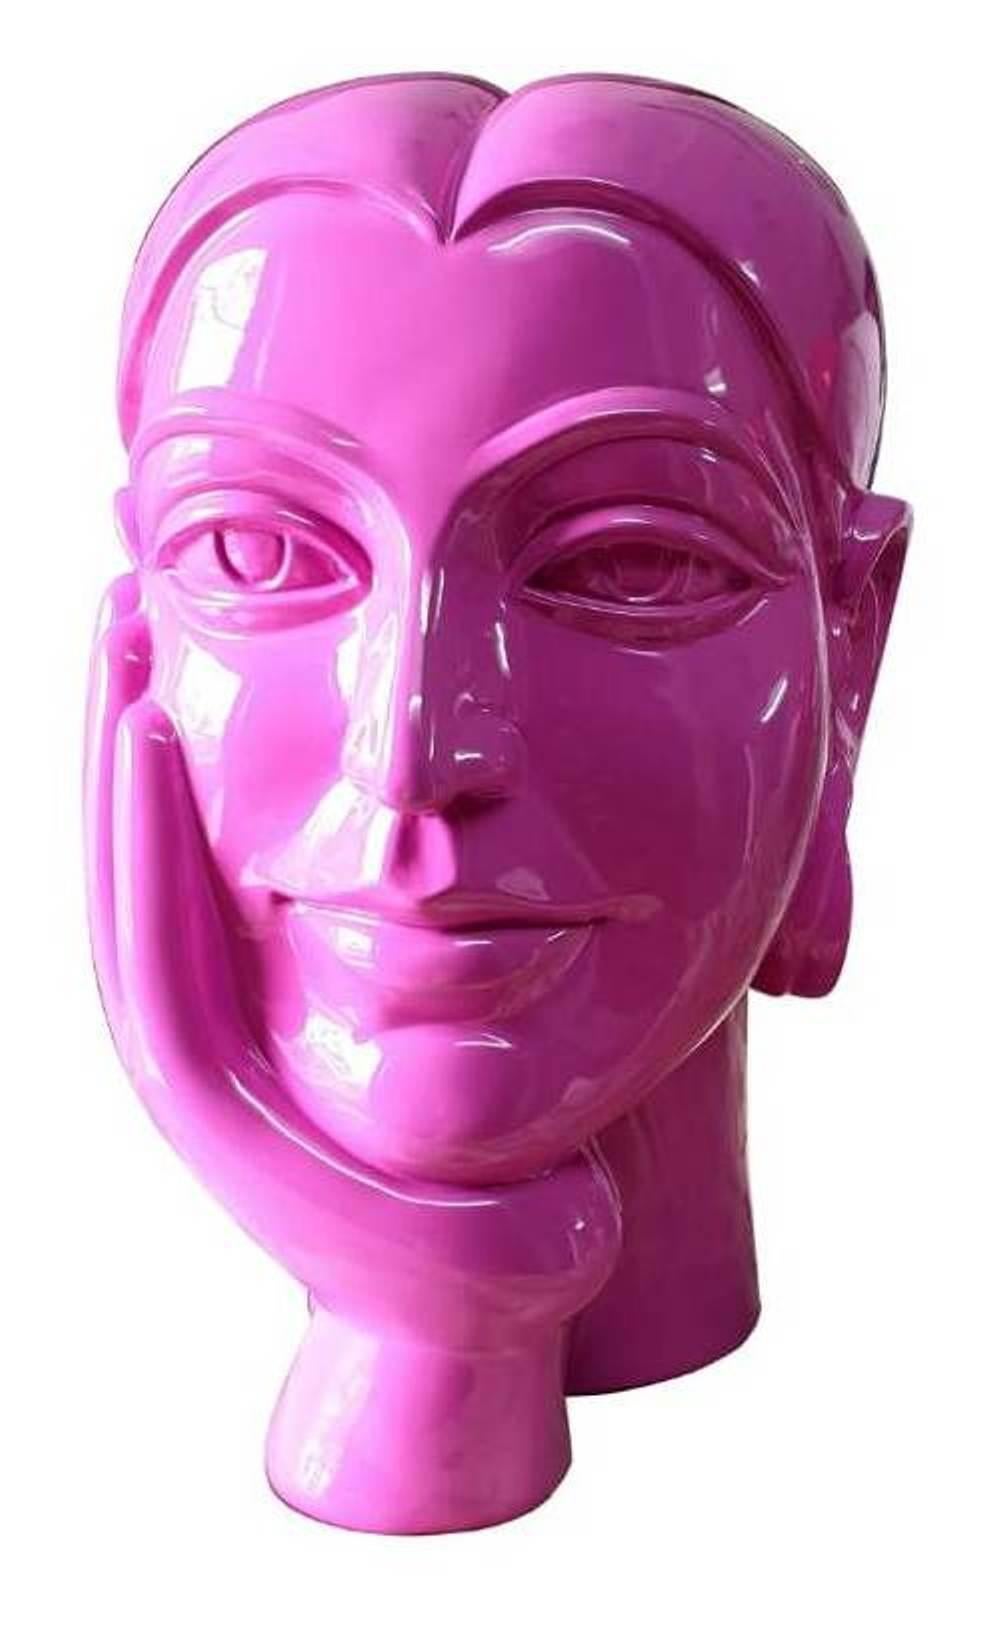 Femme en train de réfléchir, une main sur le visage, peinte en rose sur verre en fibre de verre « en stock »